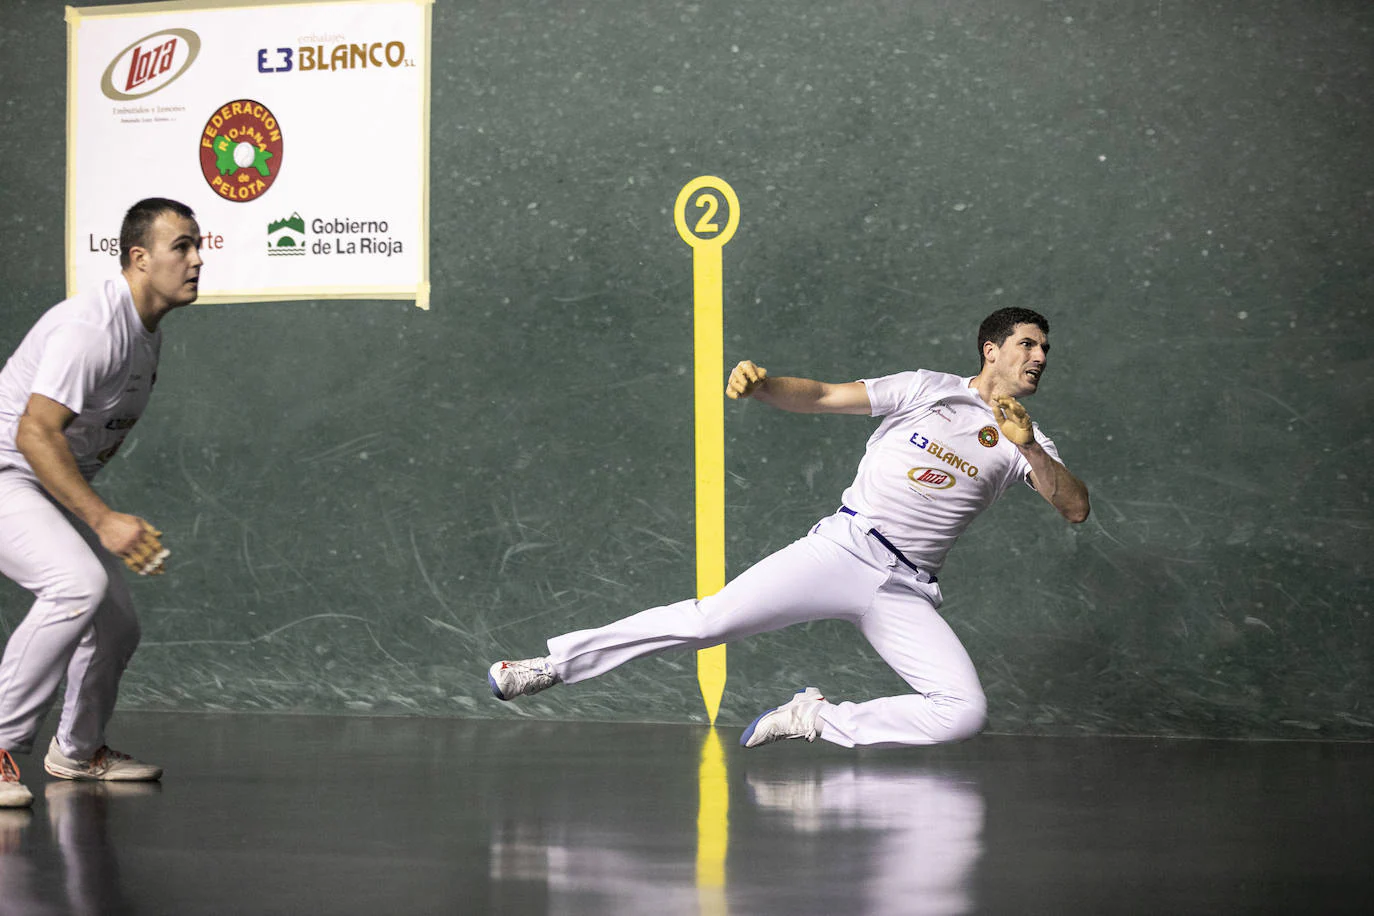 Fotos: Lerena y Jorge Altuzarra vencen en el torneo de Navidad Embalajes Blanco